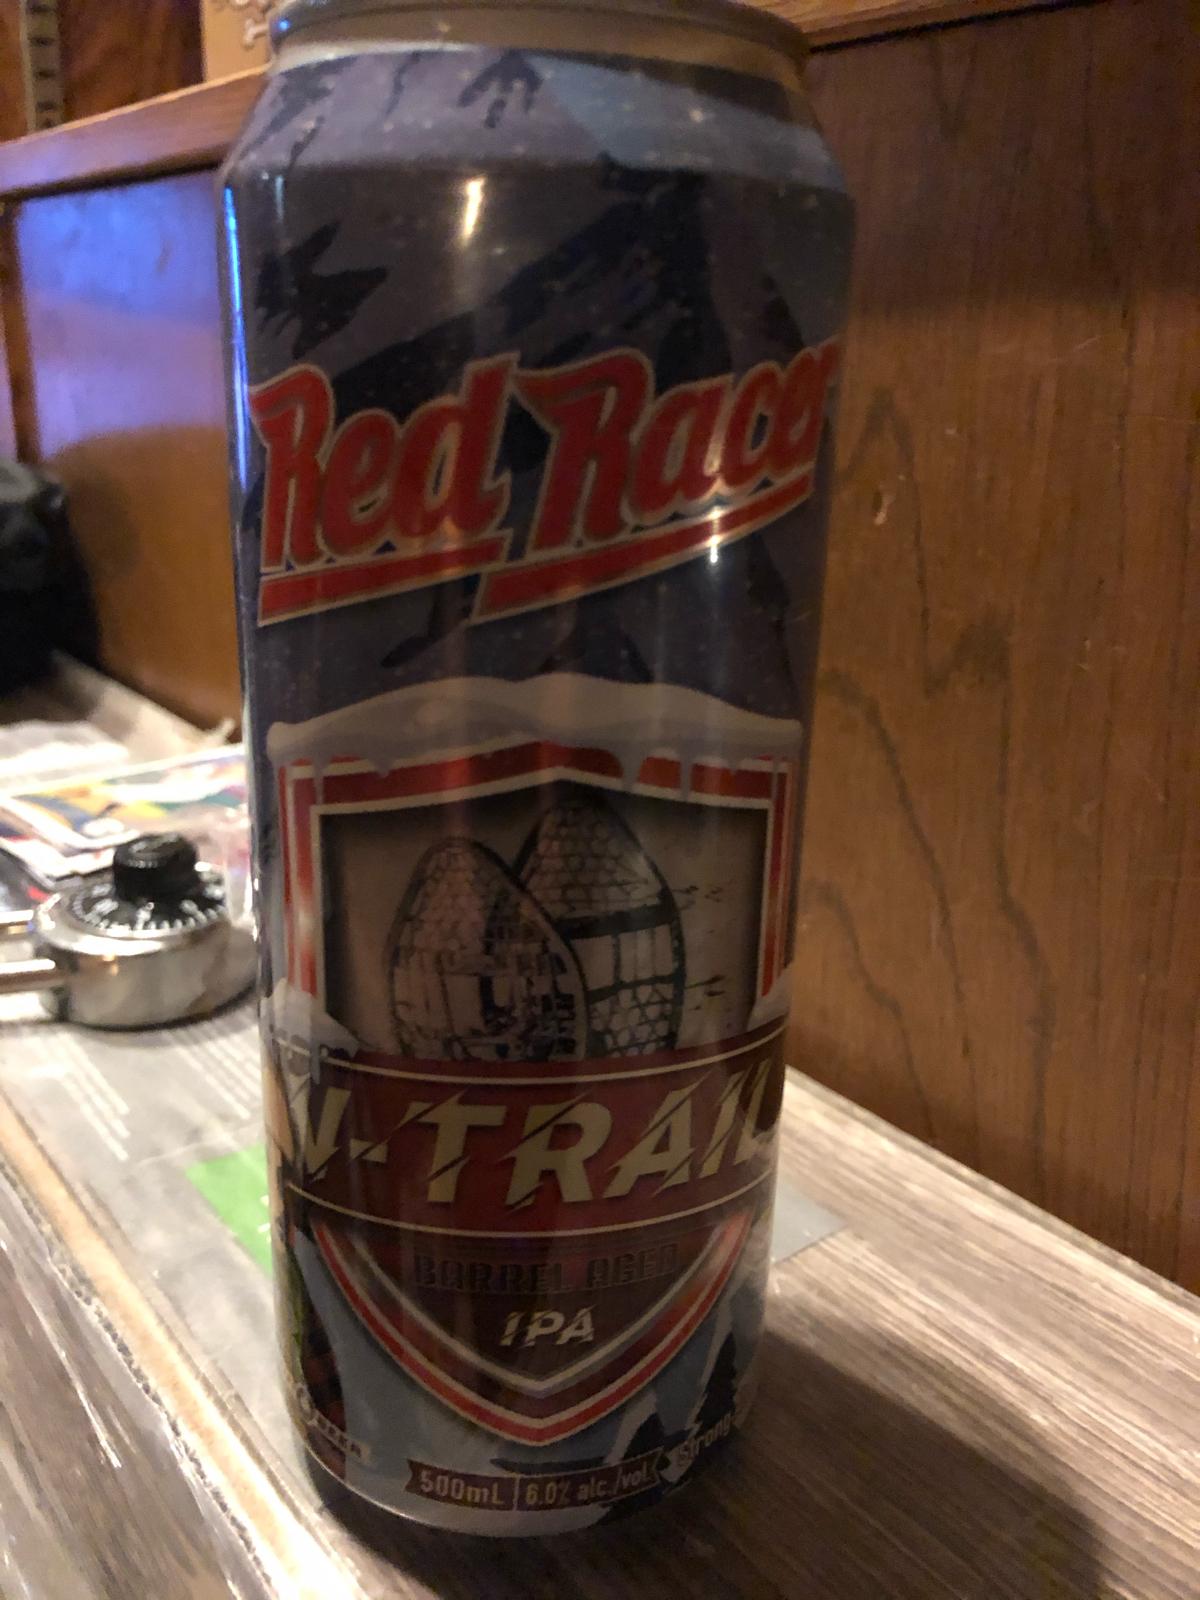 Red Racer V-Trail (Barrel Aged)